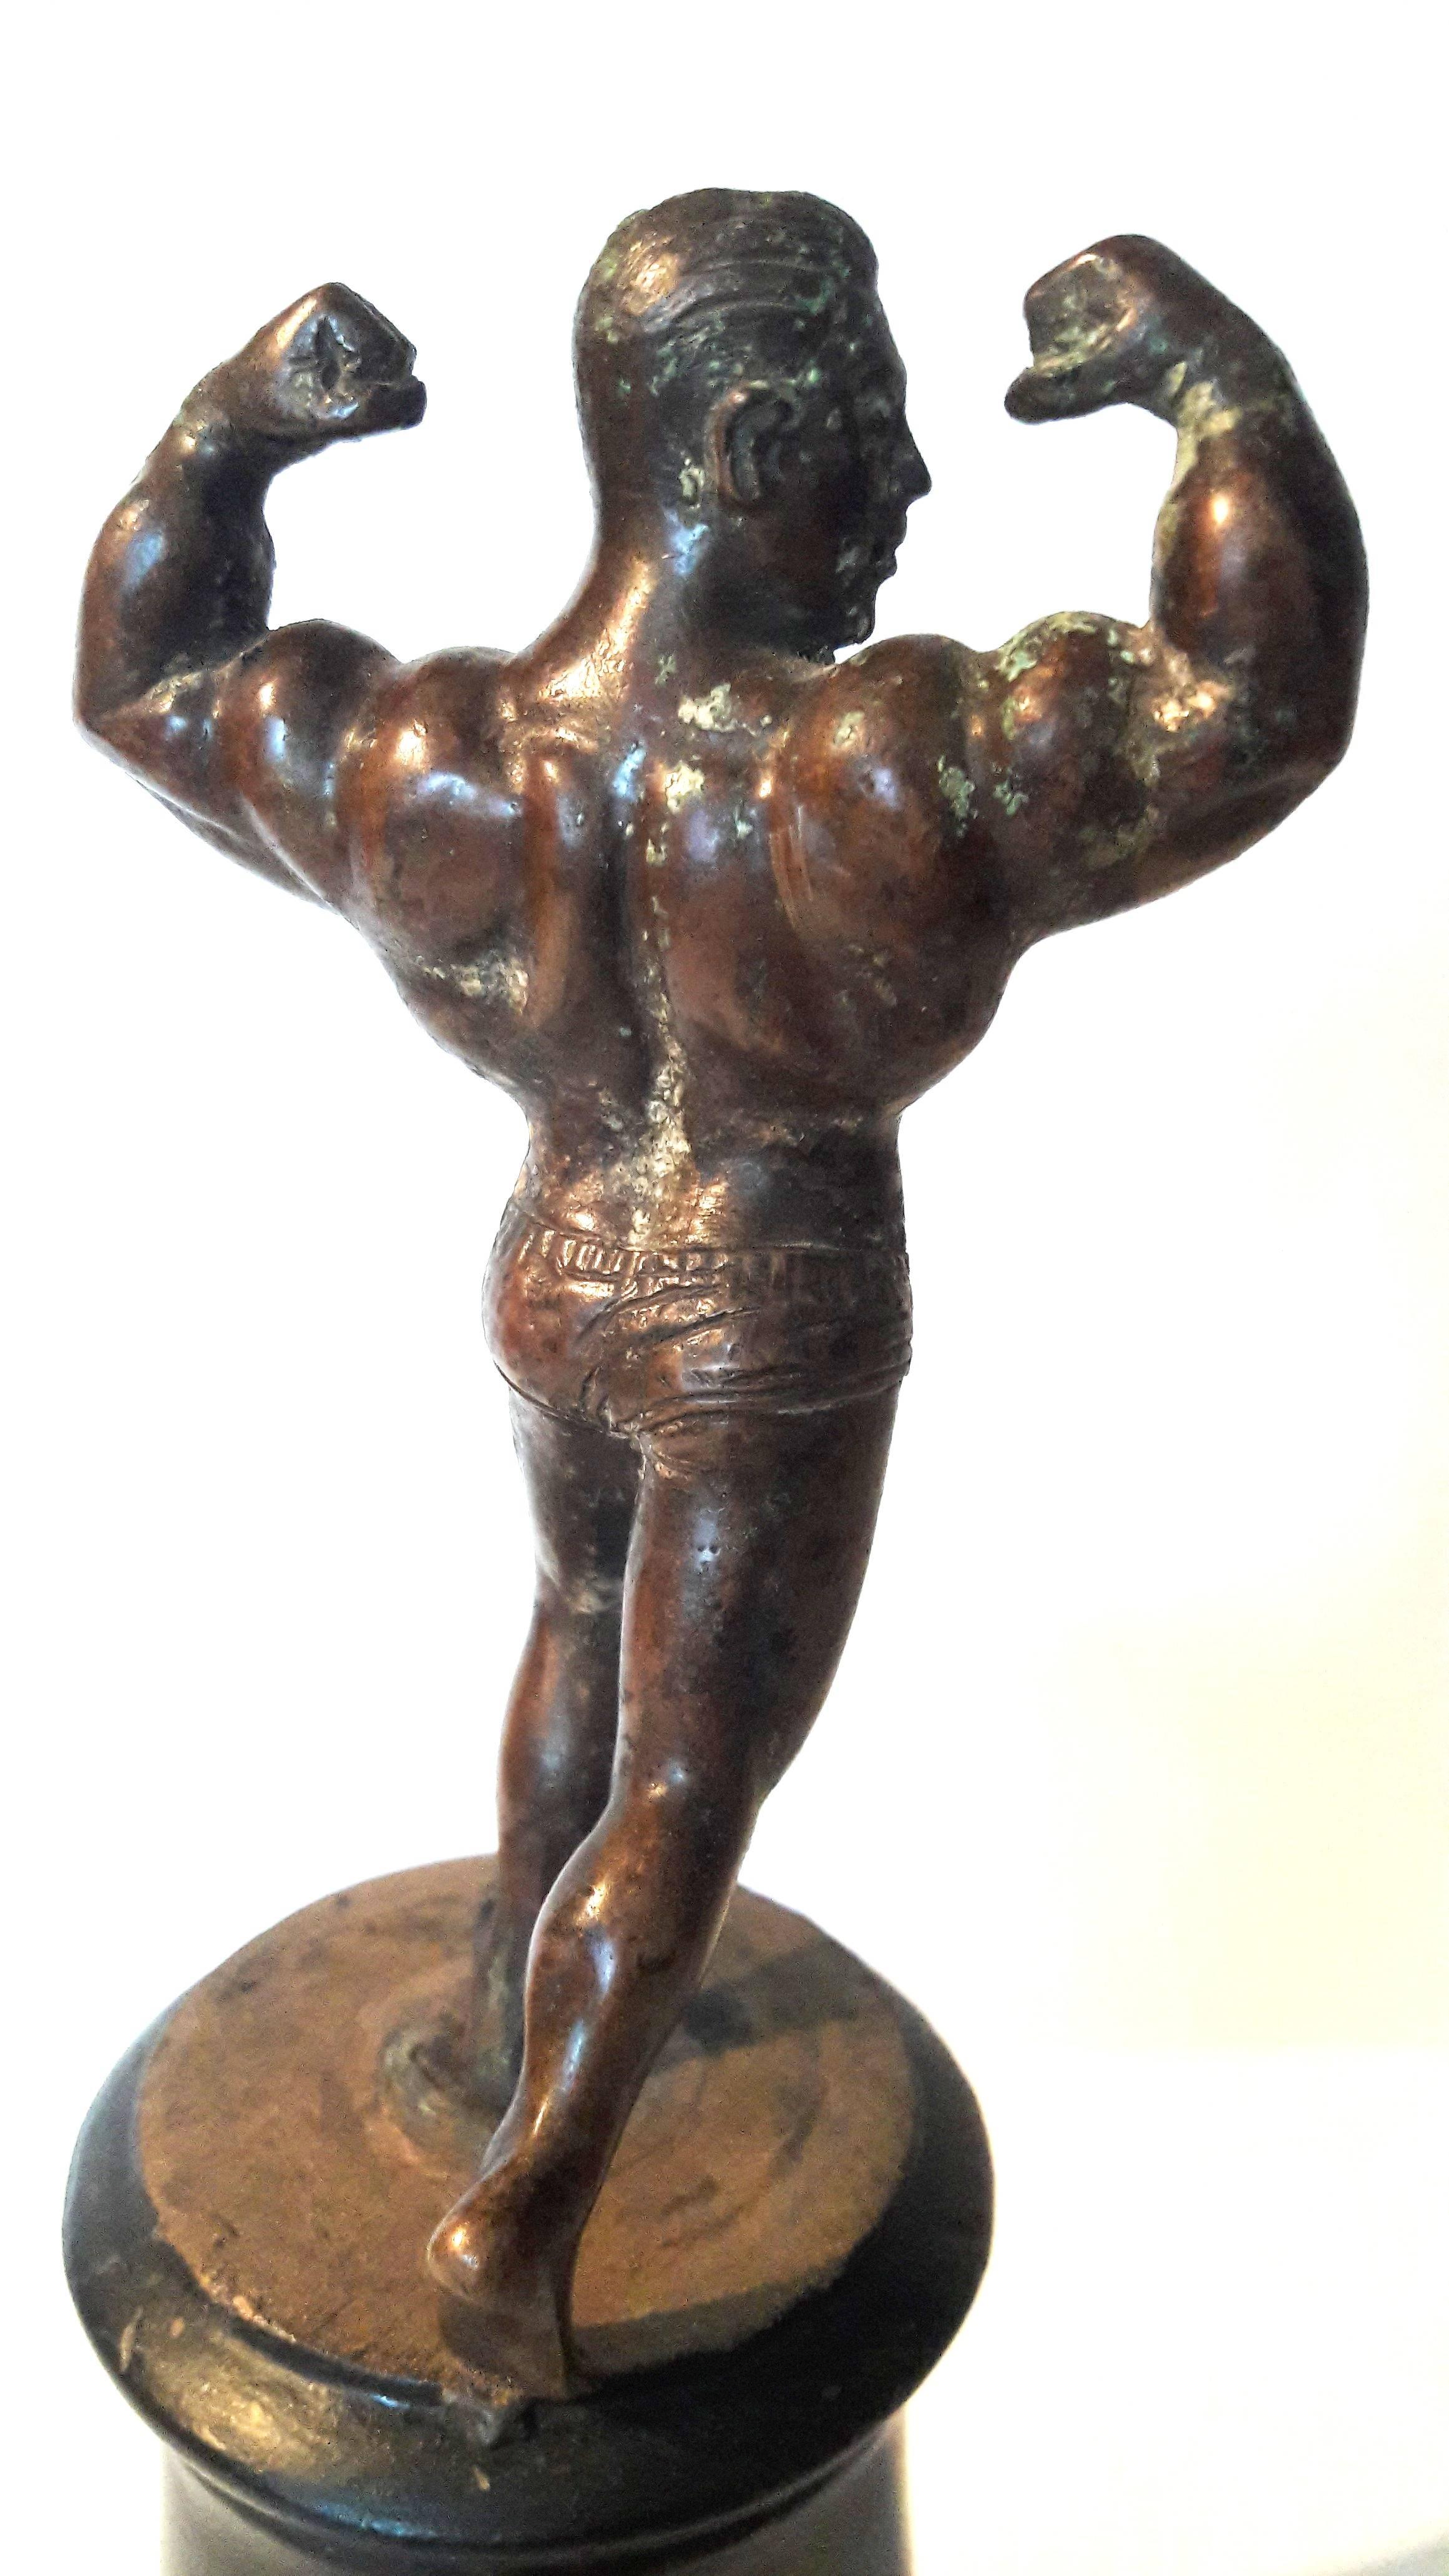 Une petite statue d'homme musclé en bronze sur un socle en bois noir.
Mesures : base de 9 1/2